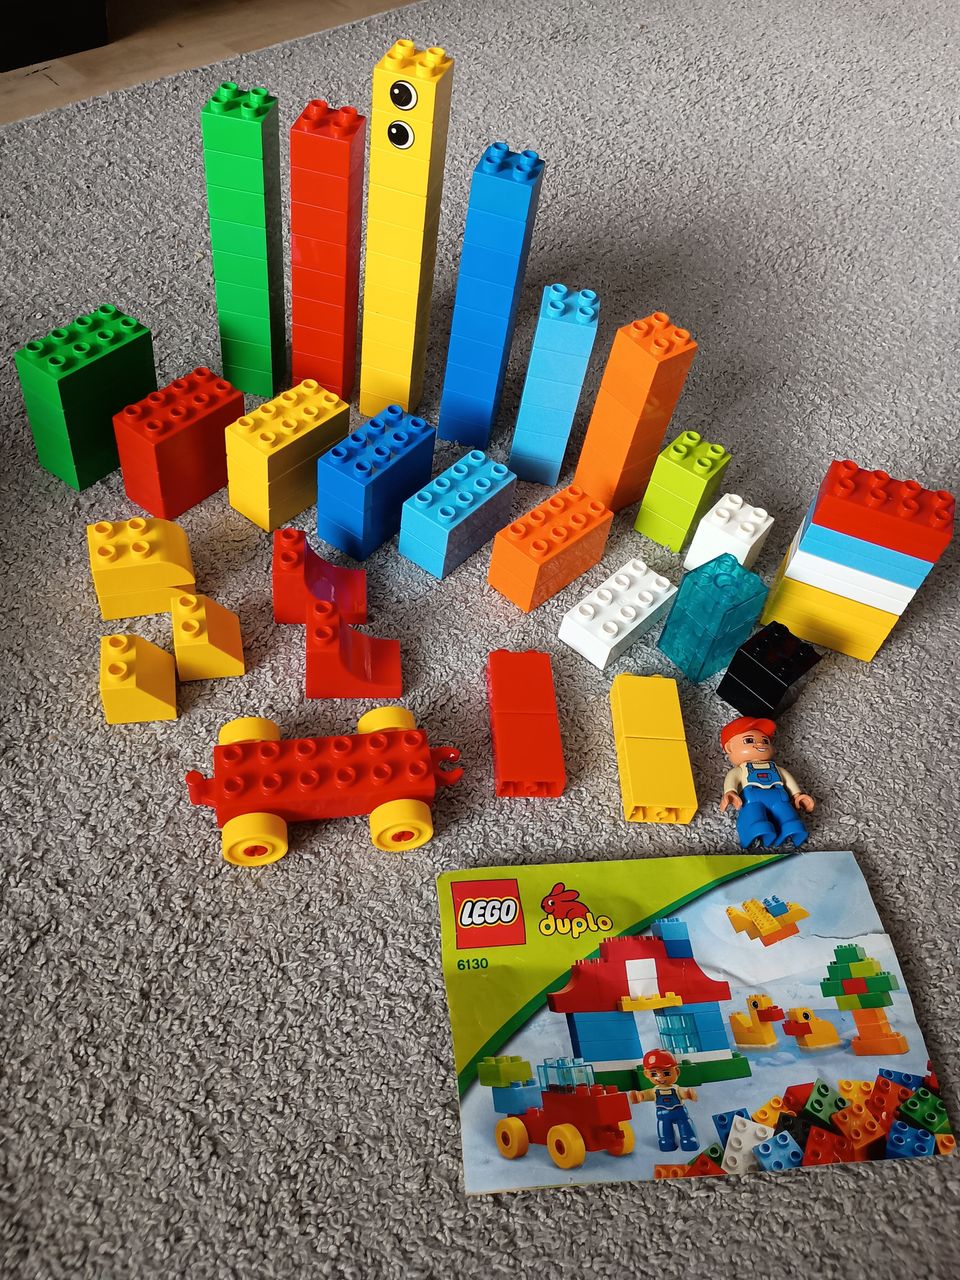 Lego Duplo 6130 Build & Play